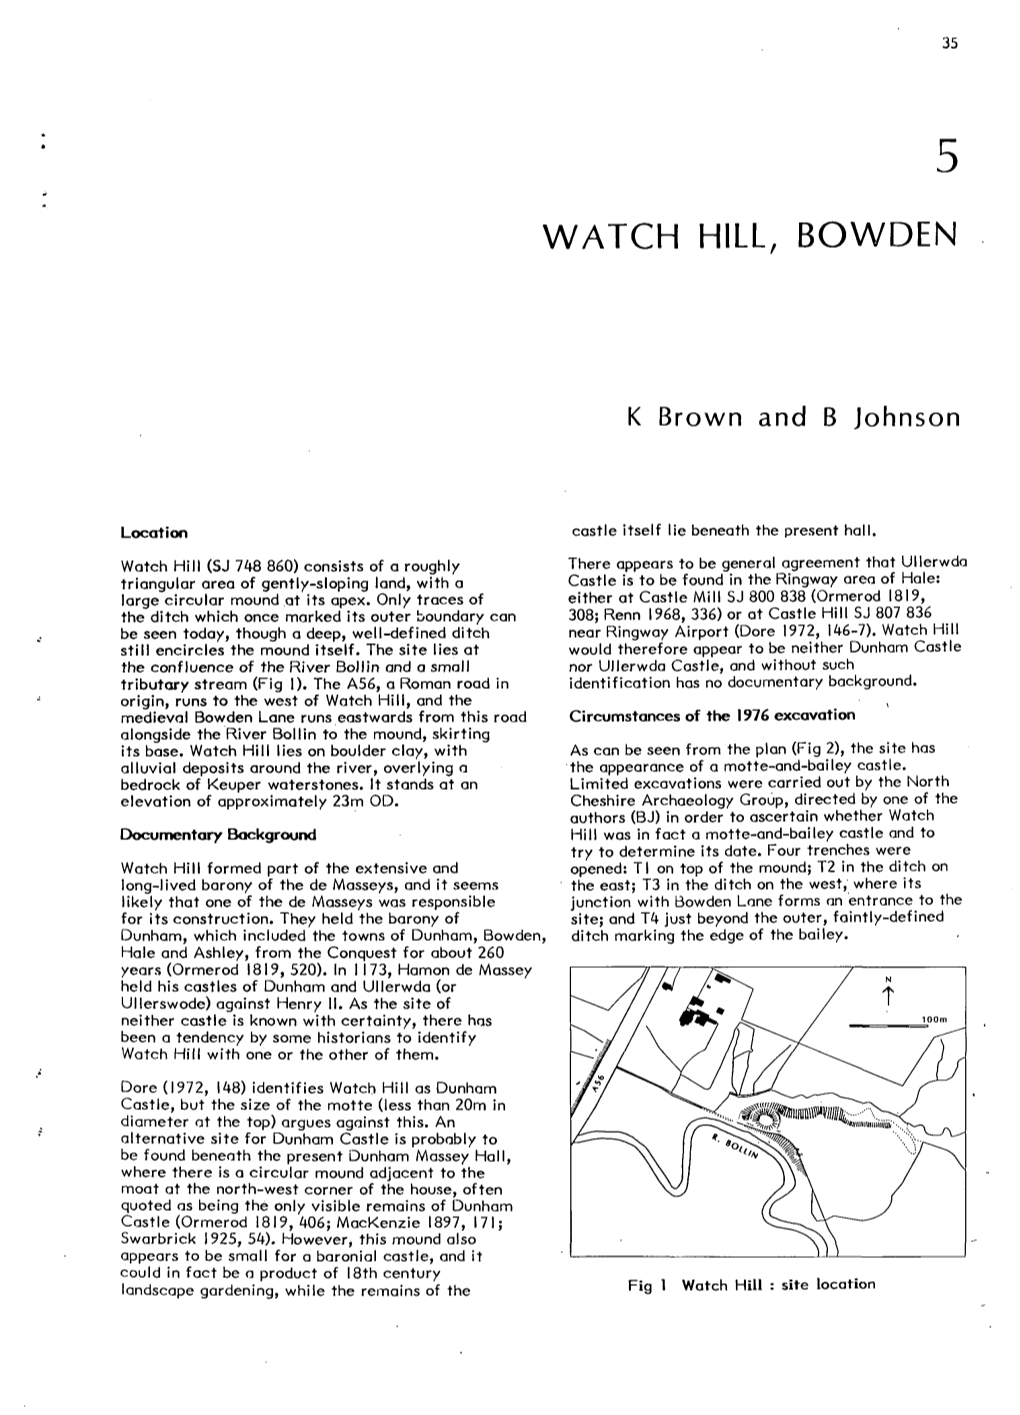 Watch Hill, Bowden